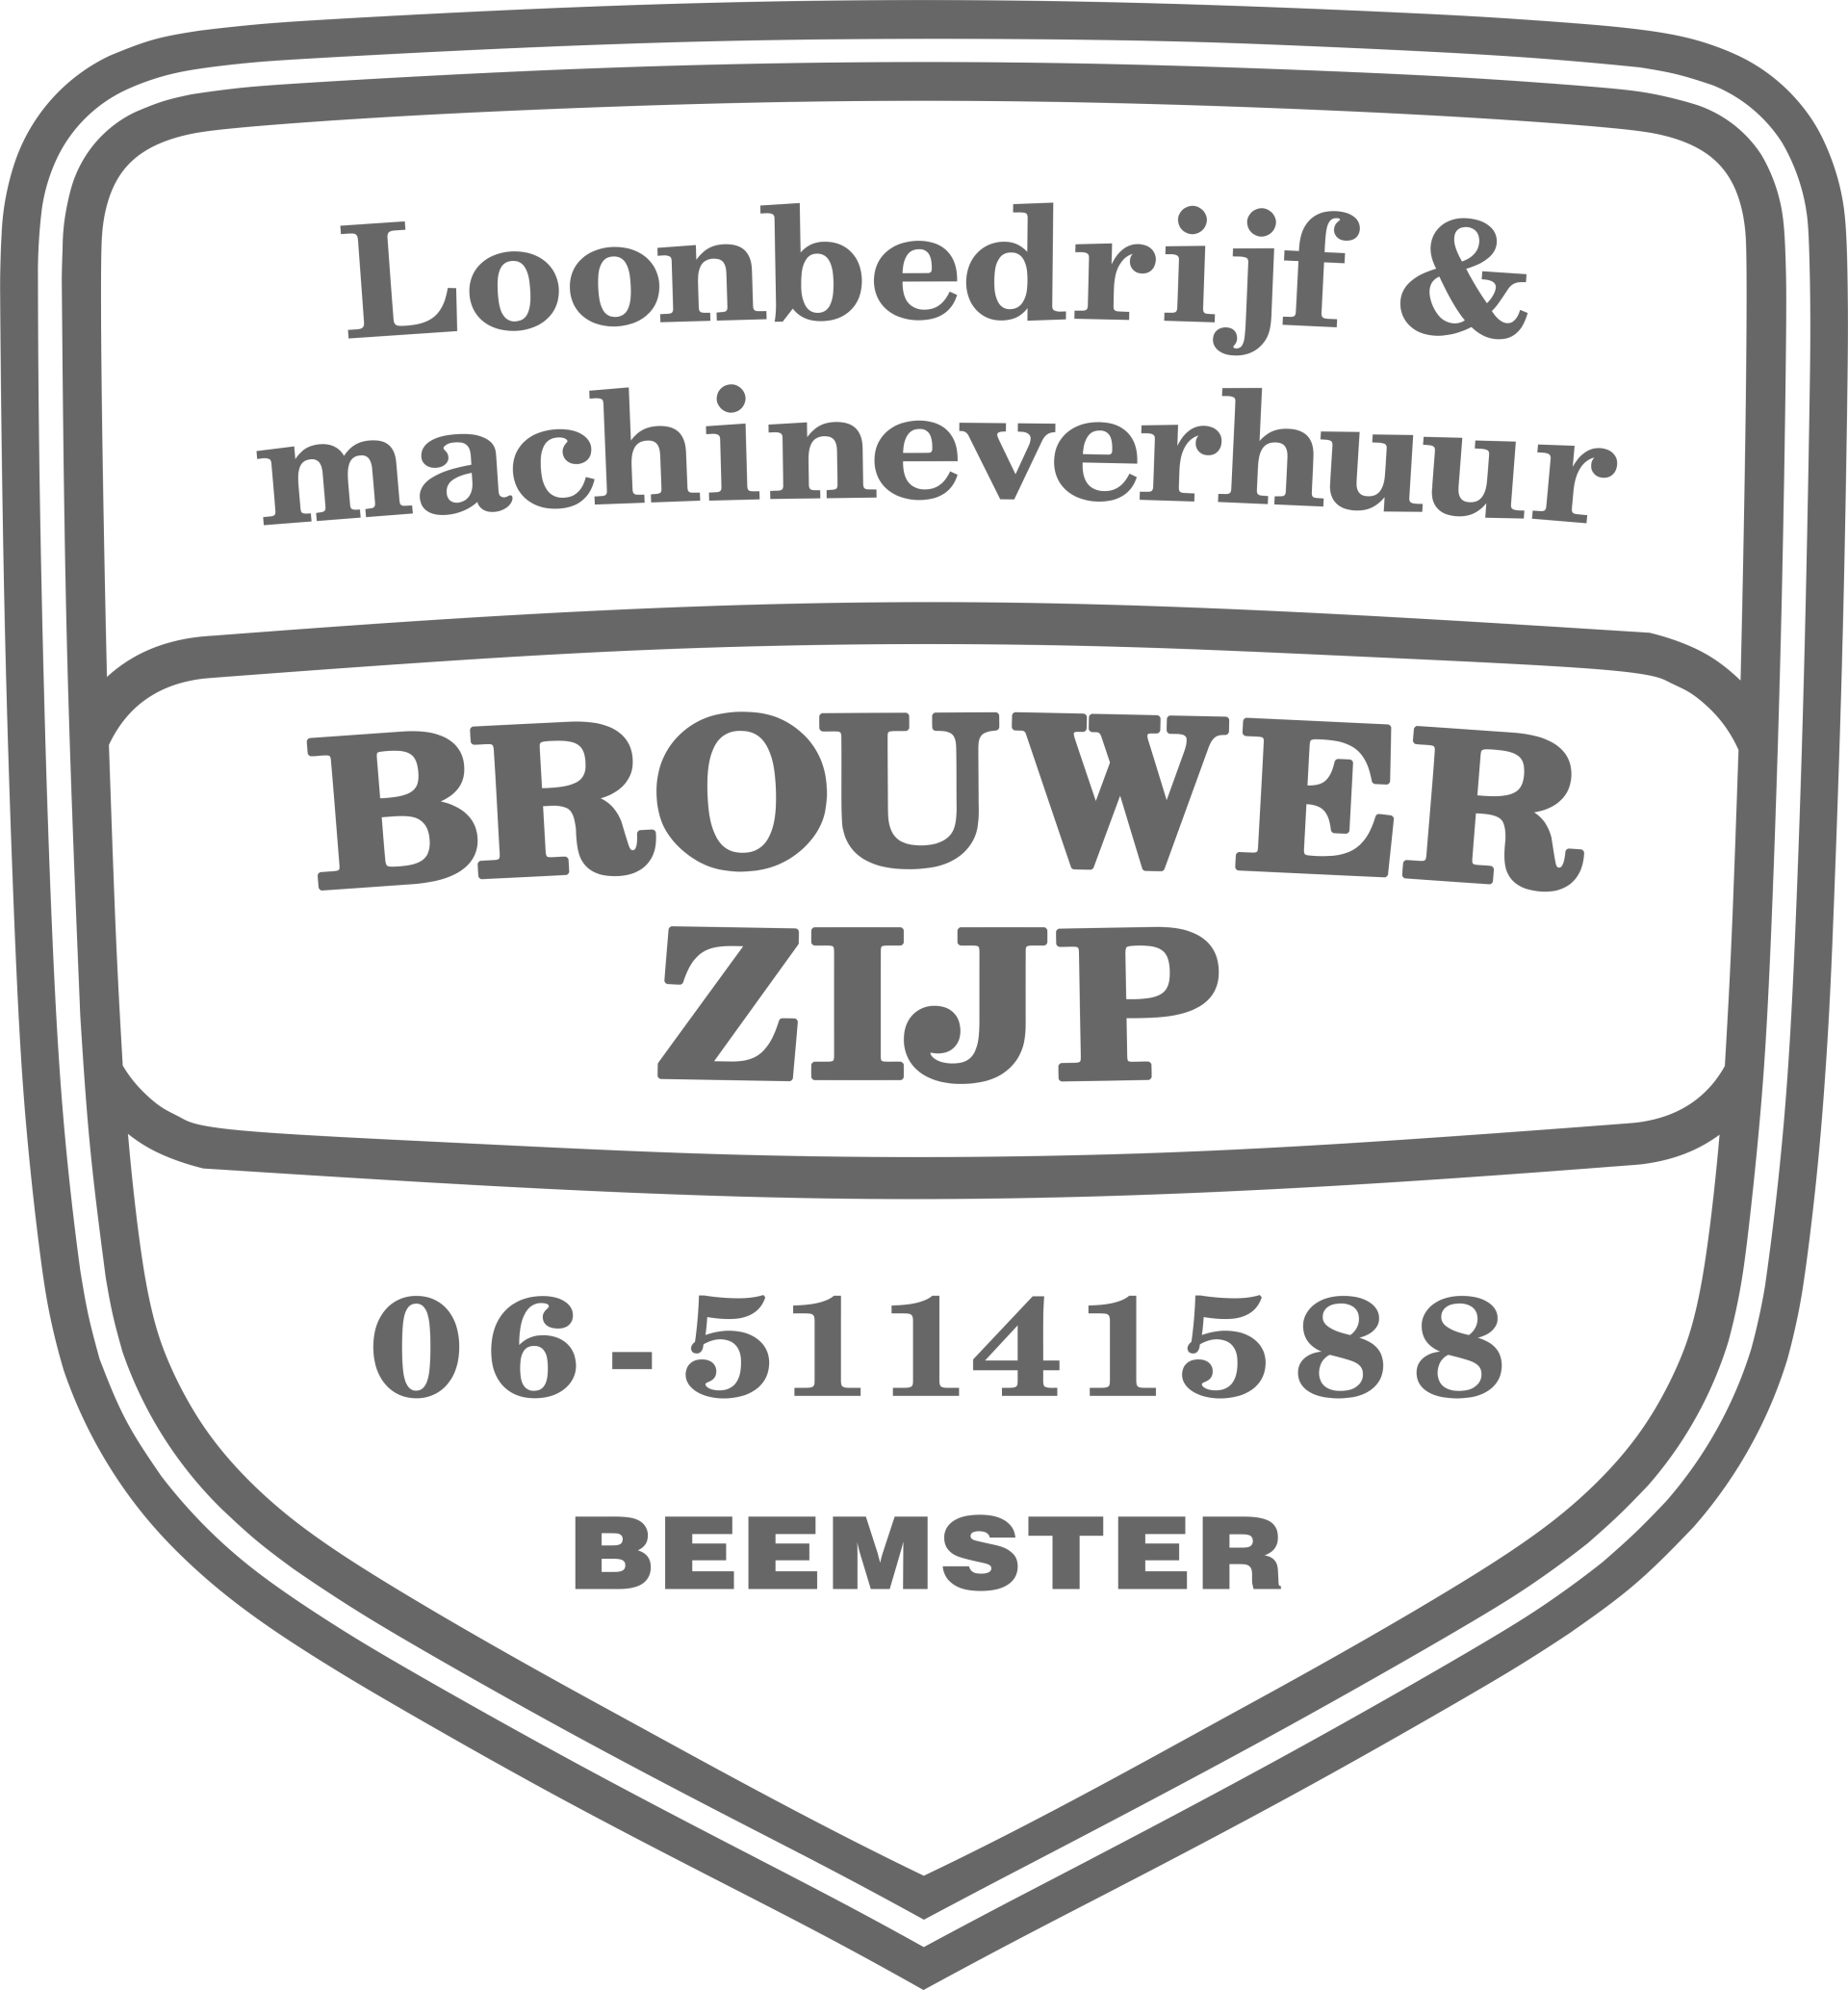 Loonbedrijf+Brouwer+Zijp+logo-1920w